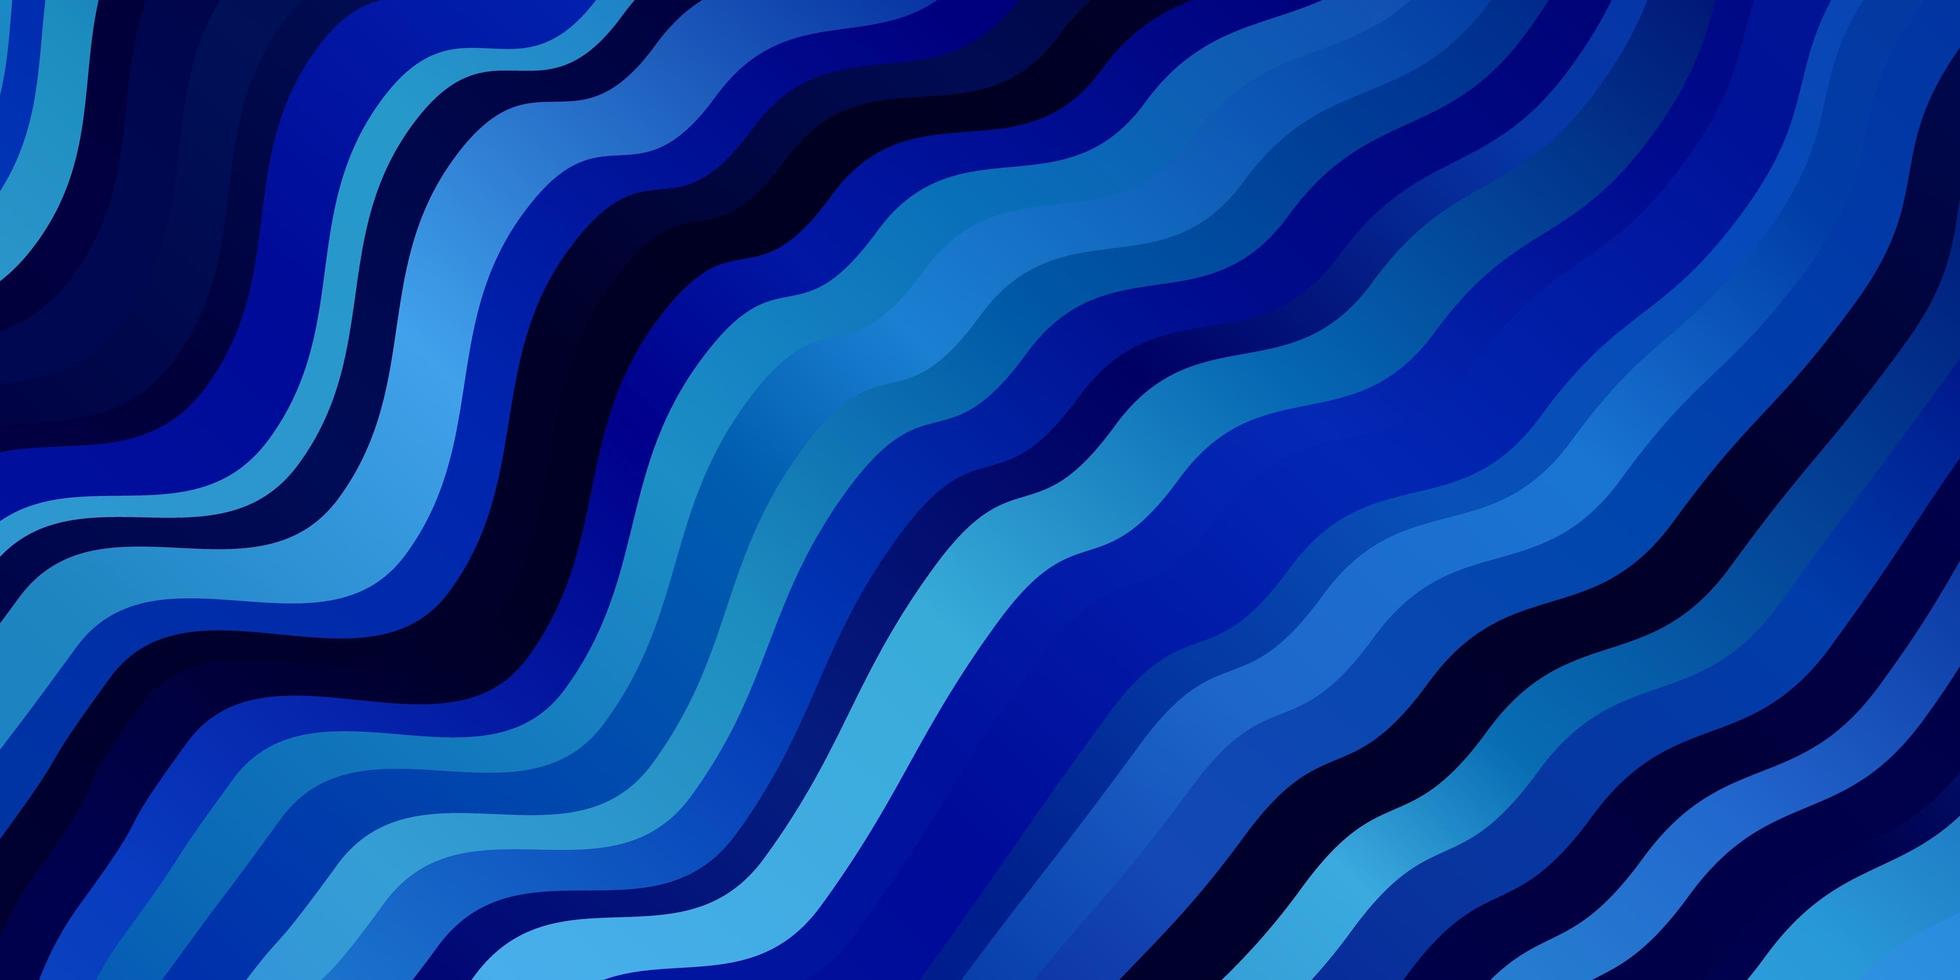 texture vettoriale blu chiaro con arco circolare. illustrazione colorata in stile astratto con linee piegate. modello per annunci, spot pubblicitari.